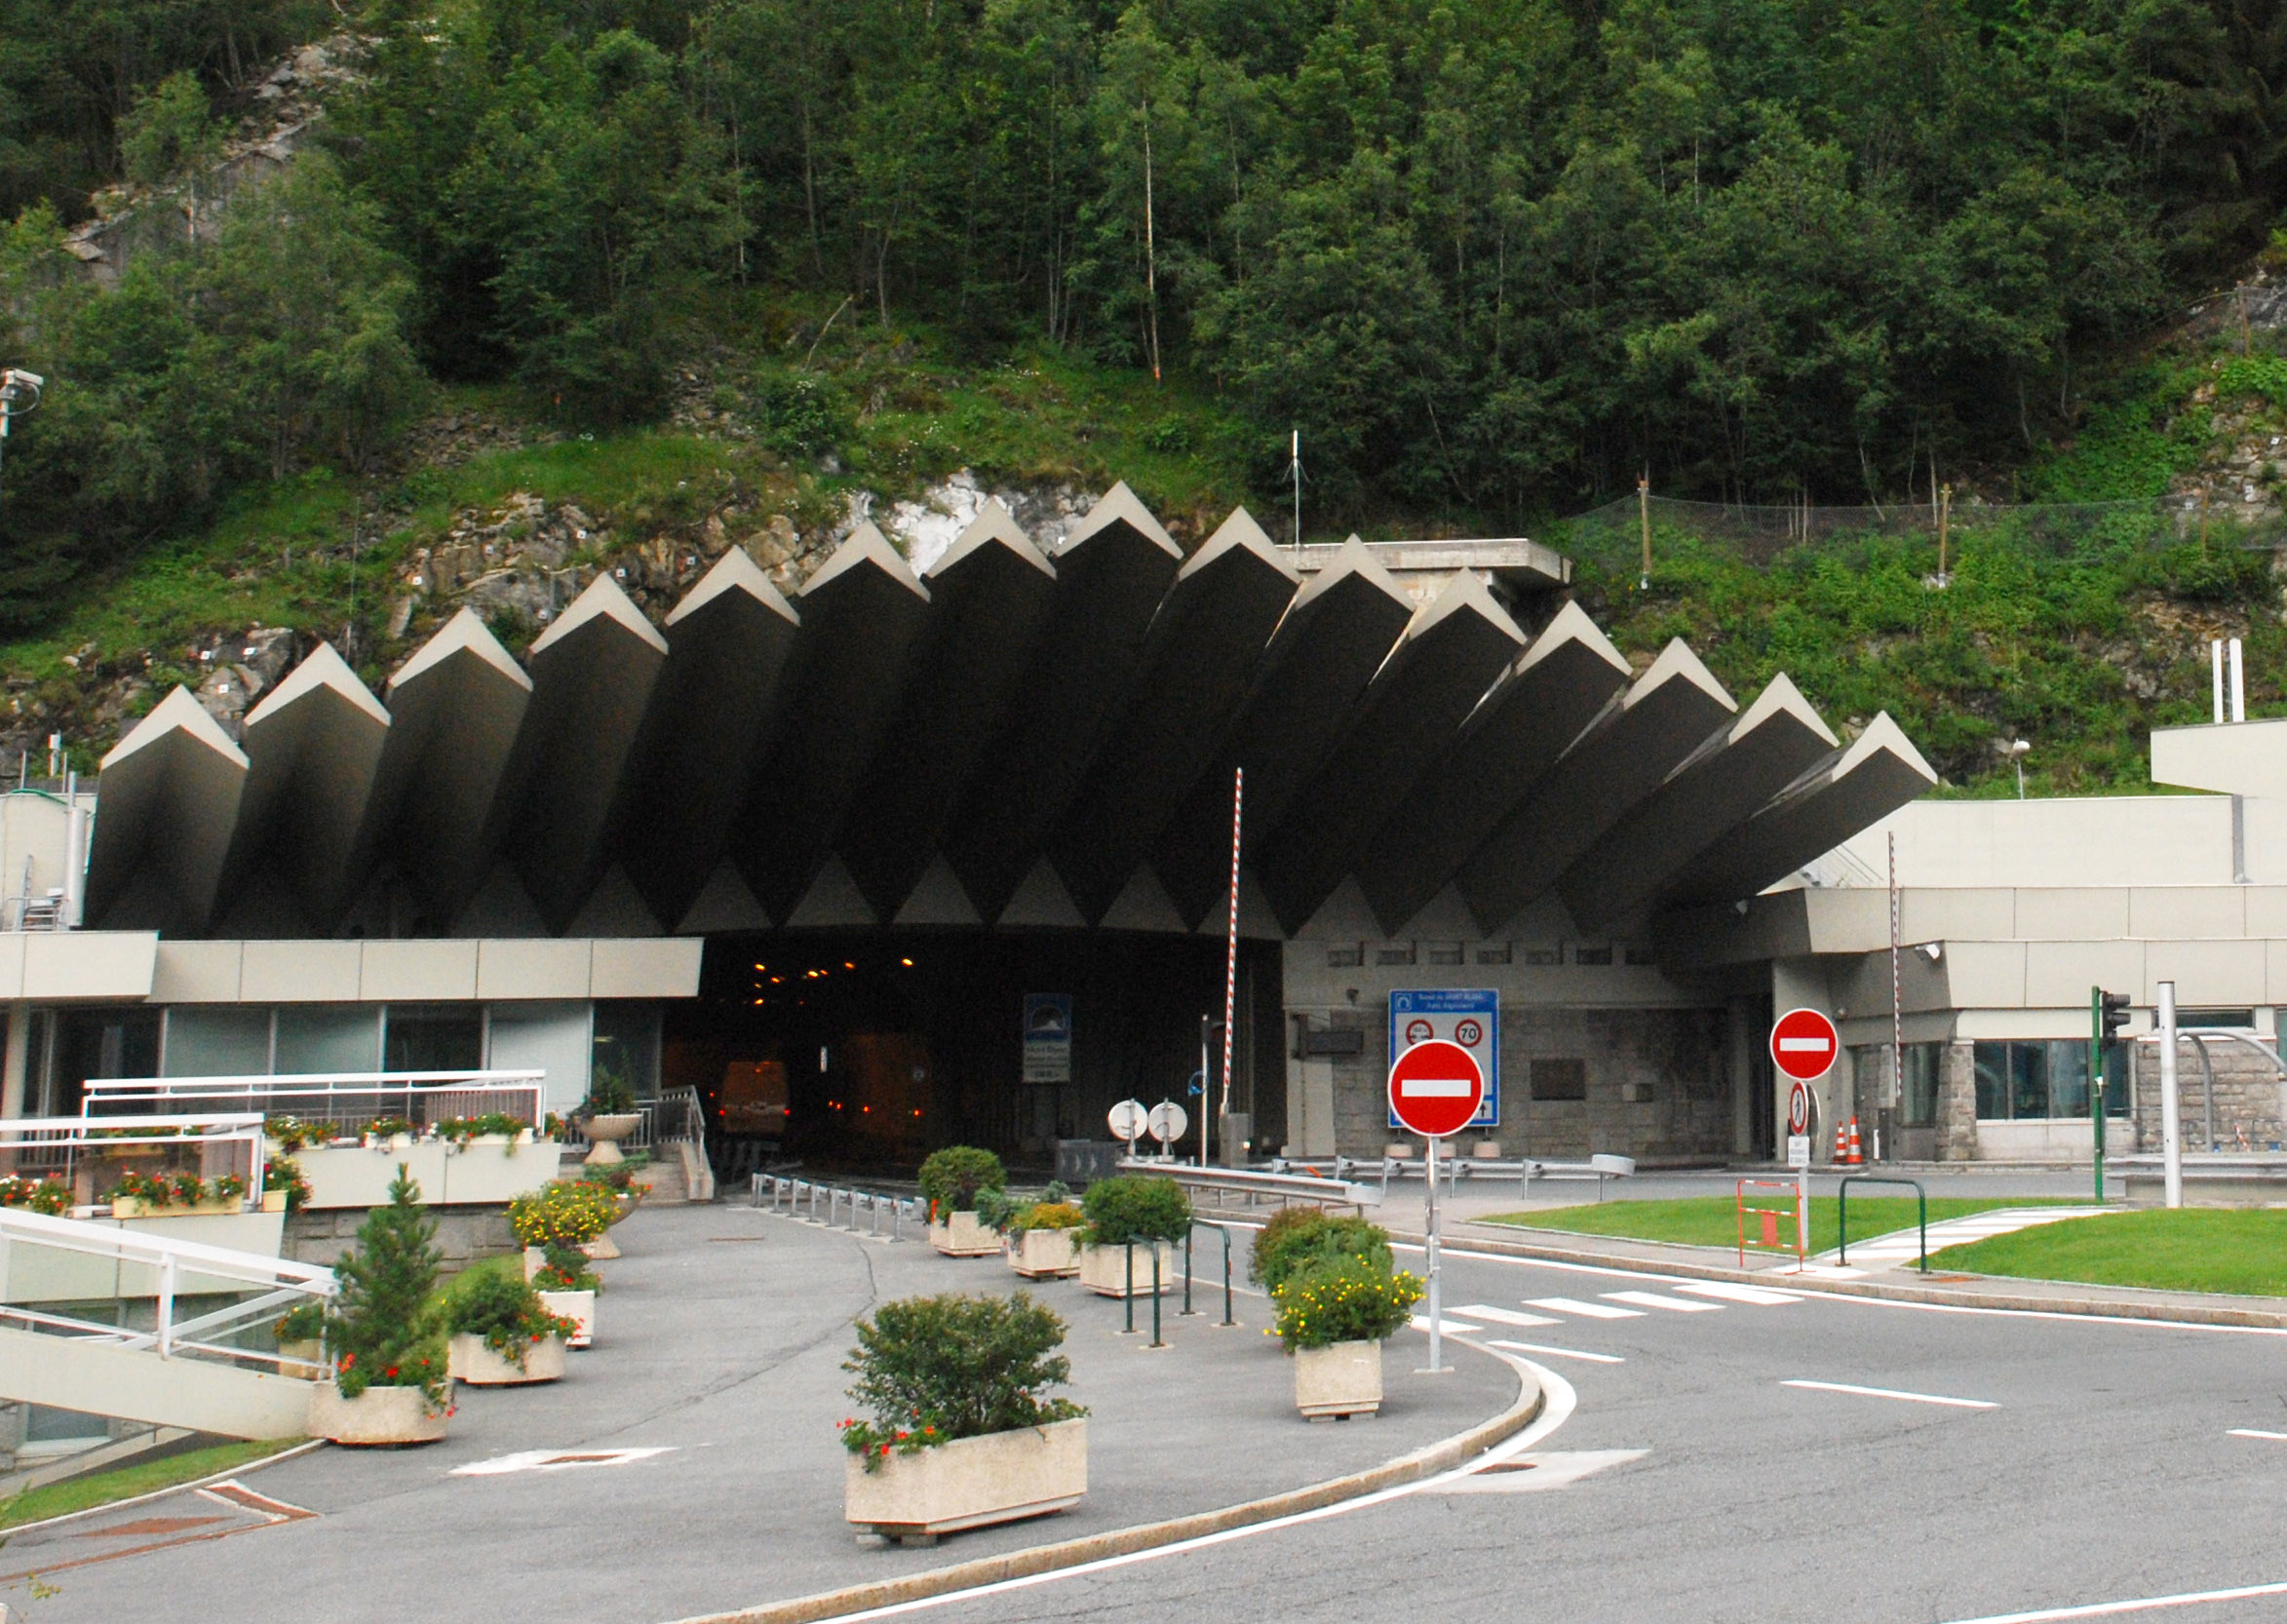 Post precedente: Posticipata la chiusura del tunnel del Monte Bianco?